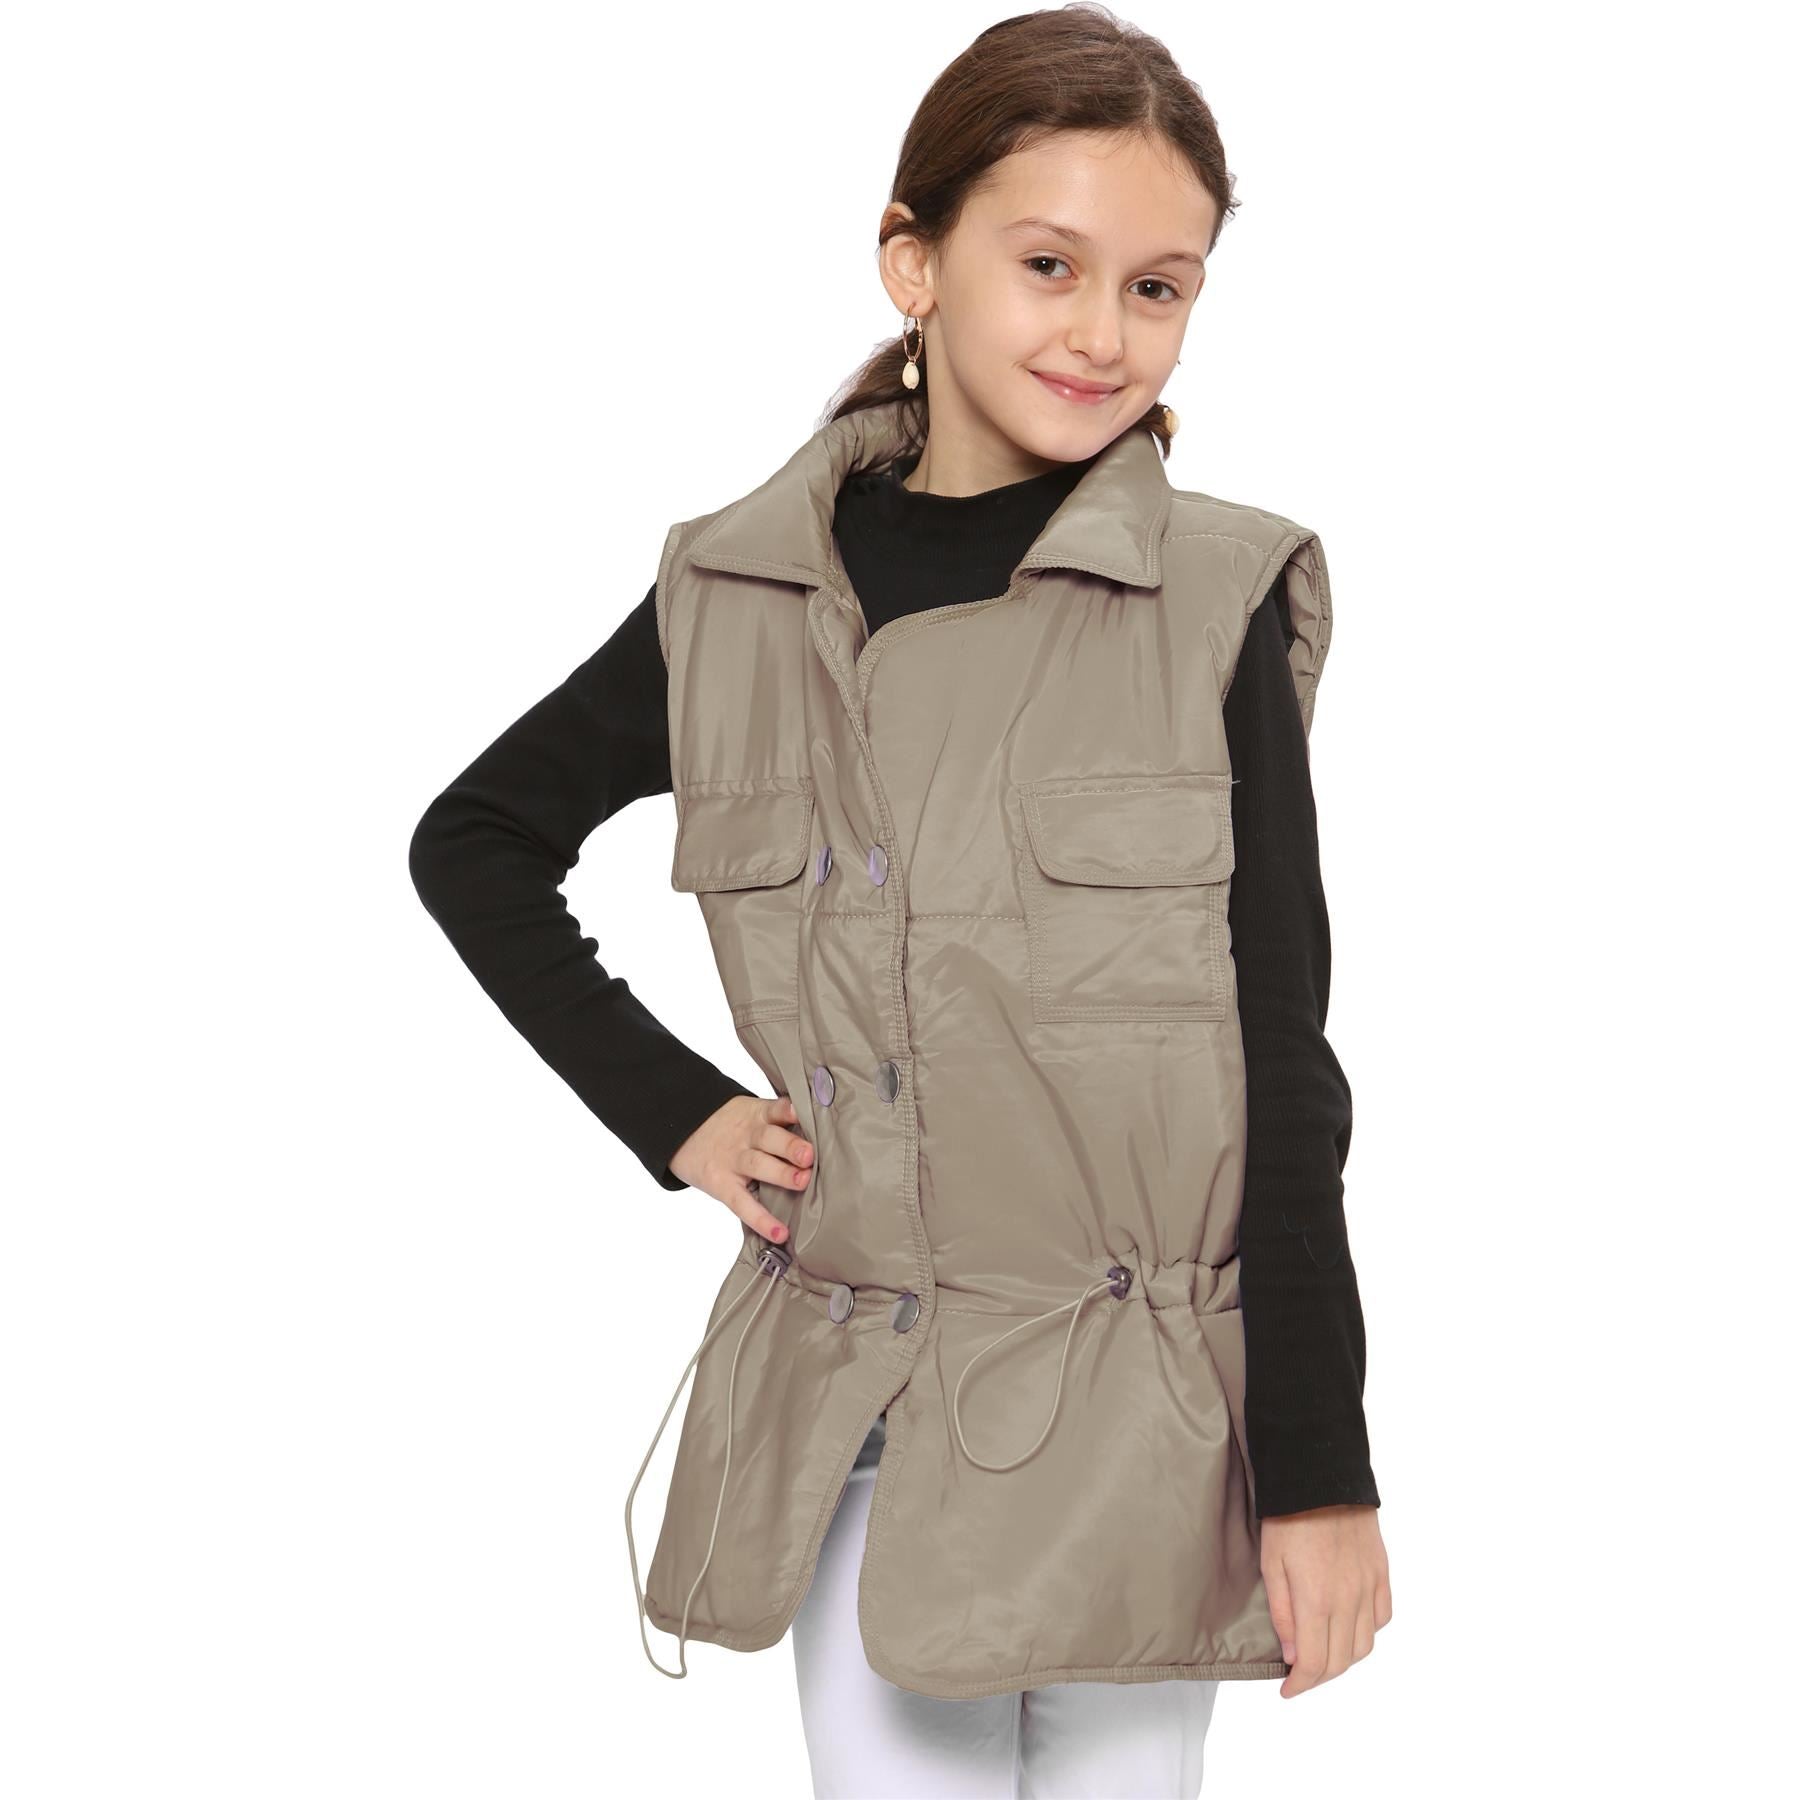 Kids Girls Stone Oversized Style Sleeveless Jacket